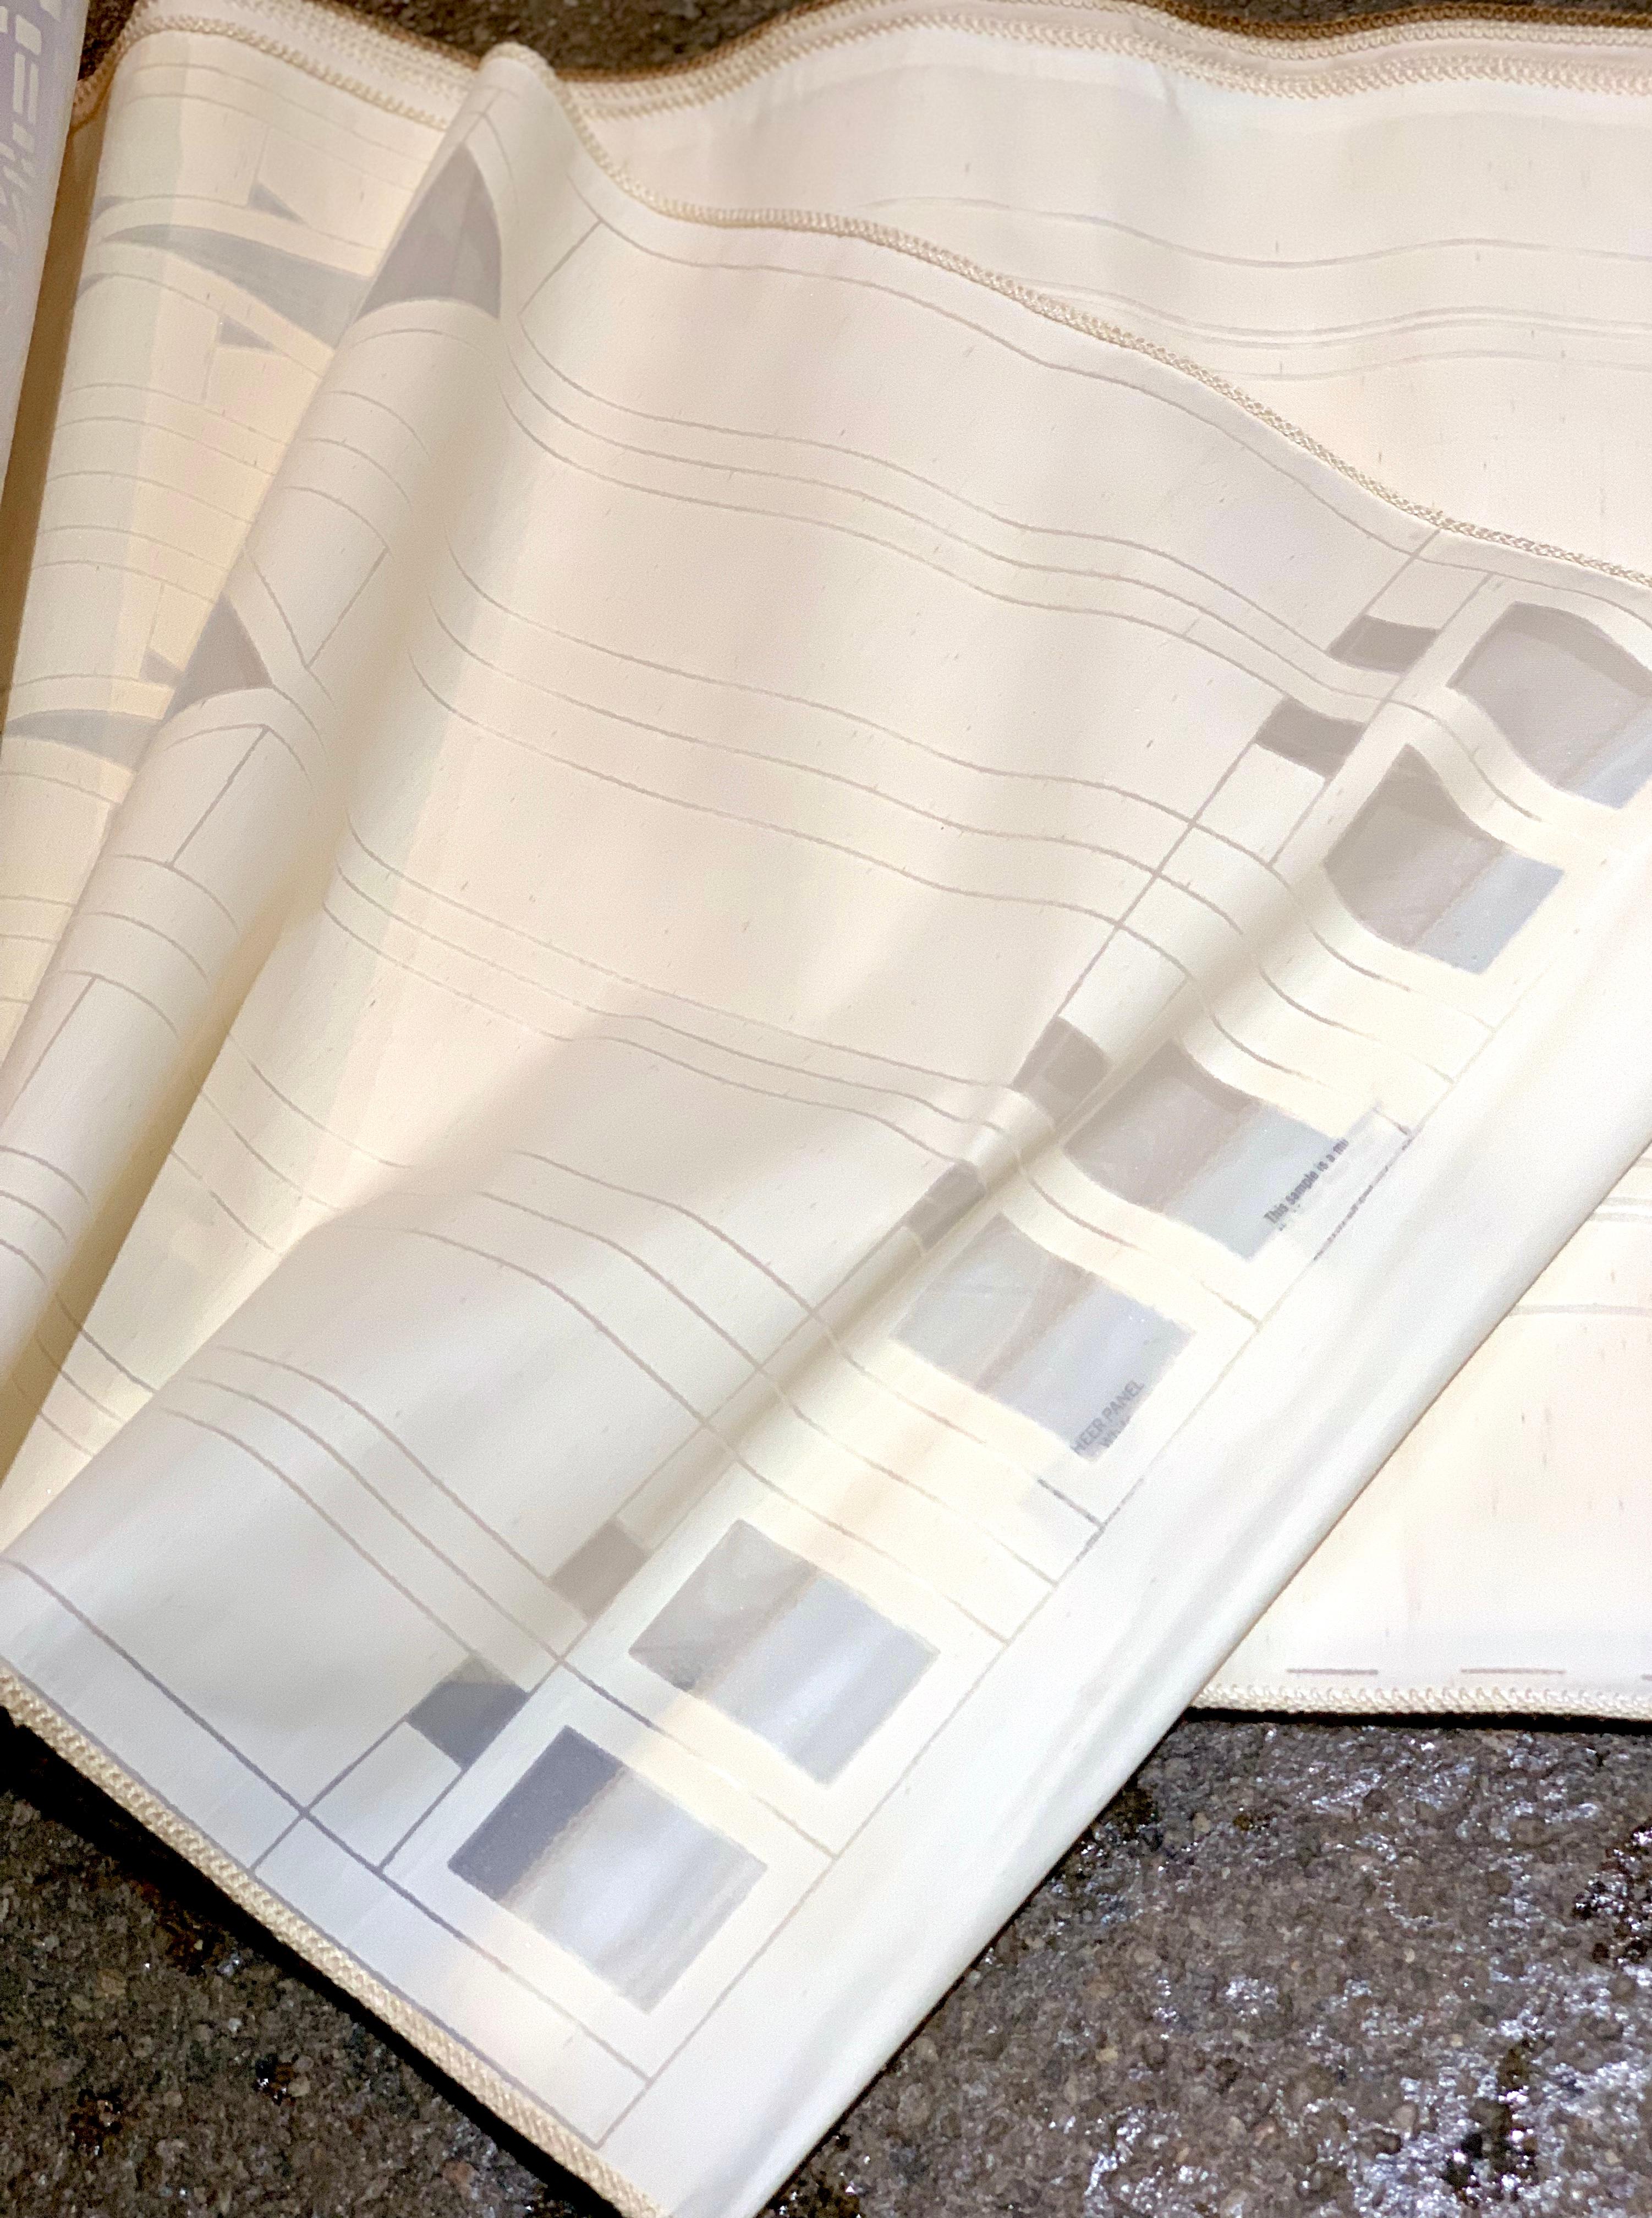 Référence de l'échantillon textile surdimensionné de Frank Lloyds Schumacher, 1955 / 1986. Ensemble extrêmement rare de panneaux à grande échelle (qui sont des versions miniaturisées des panneaux personnalisés plus grands) de Schumacher et conçus